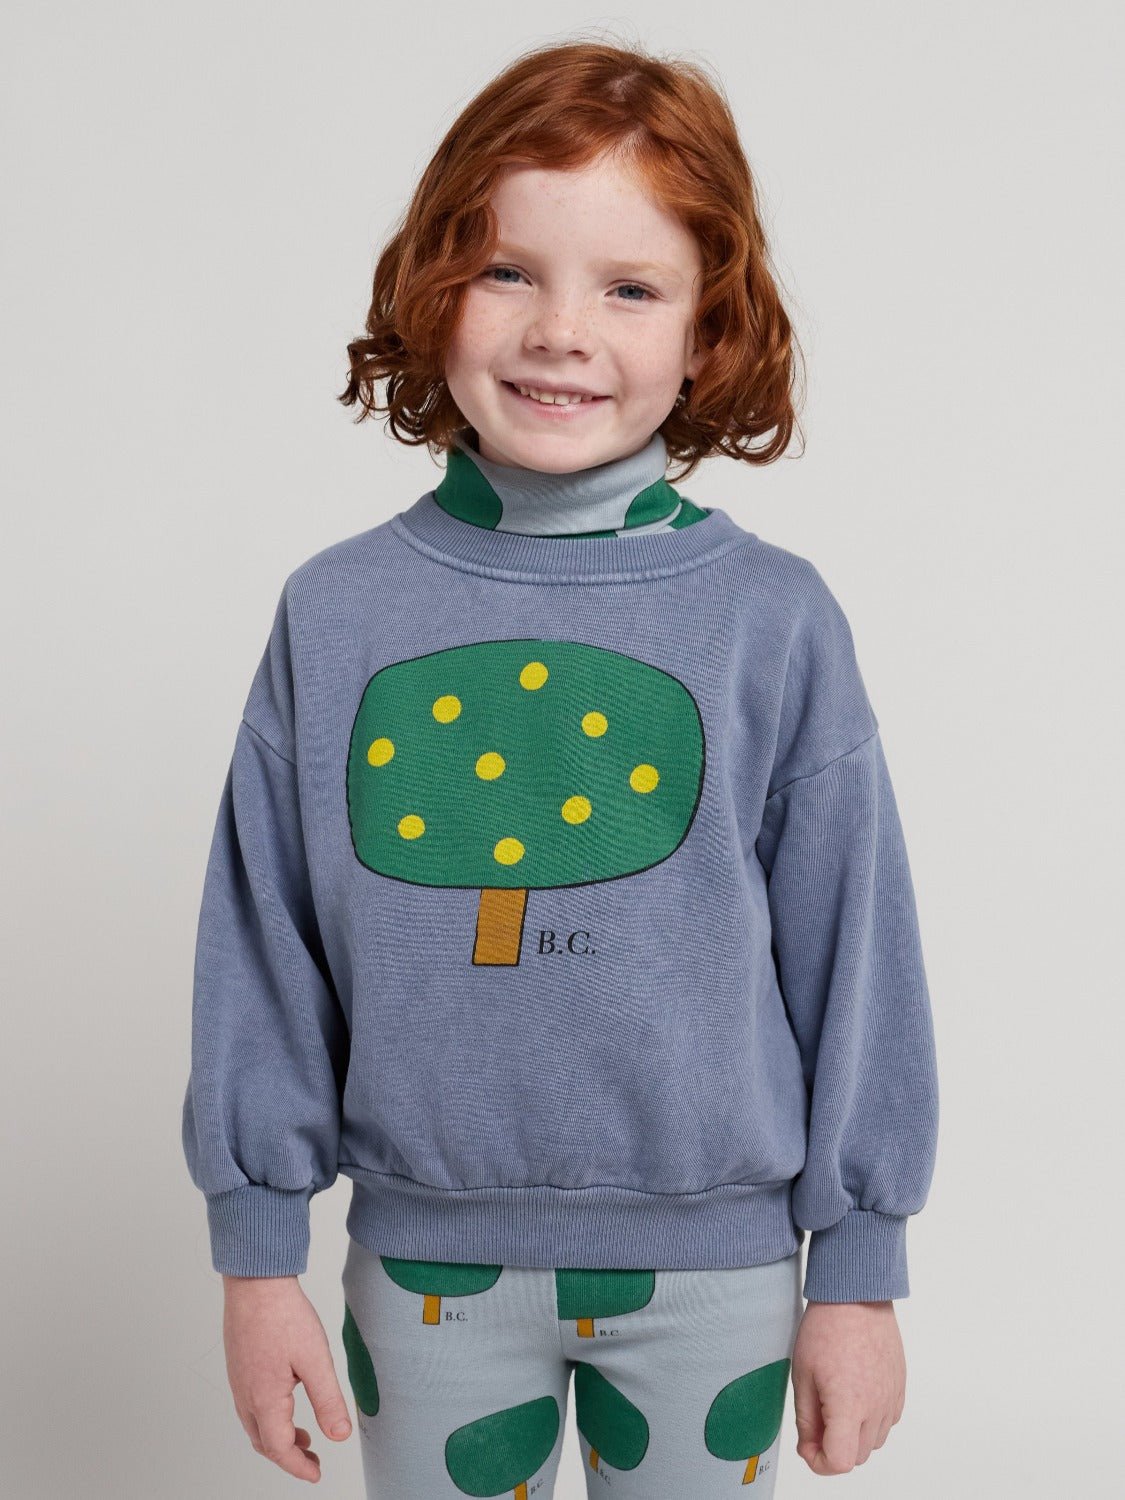 Green Tree Sweatshirt by Bobo Choses - Petite Belle